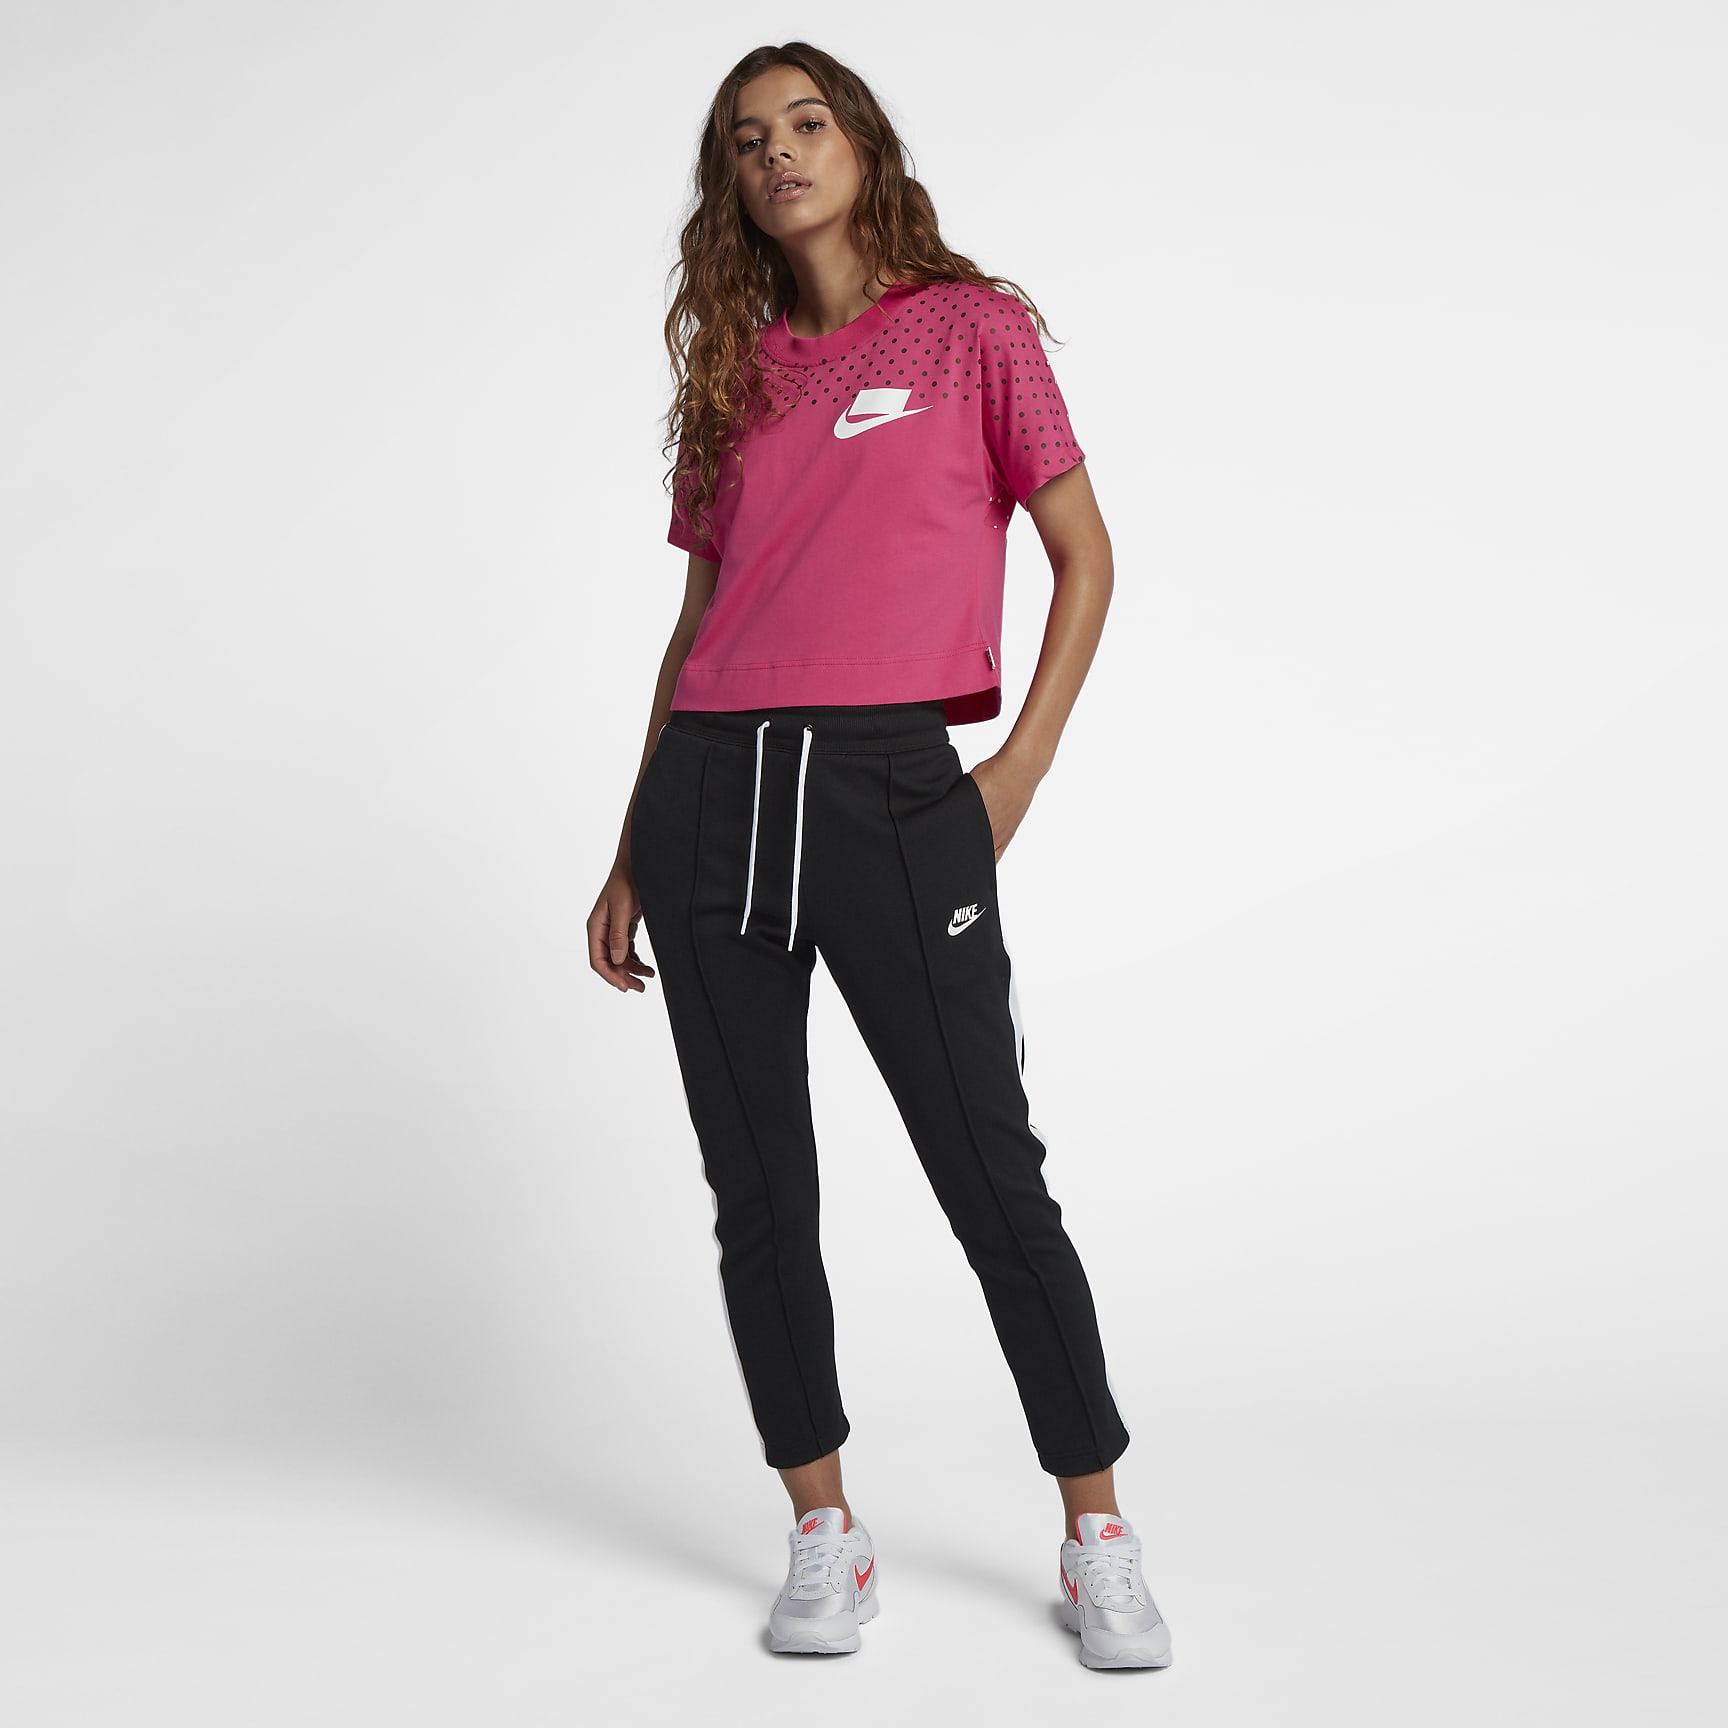 Nike Sportswear Women's Crop Top. Nike IL